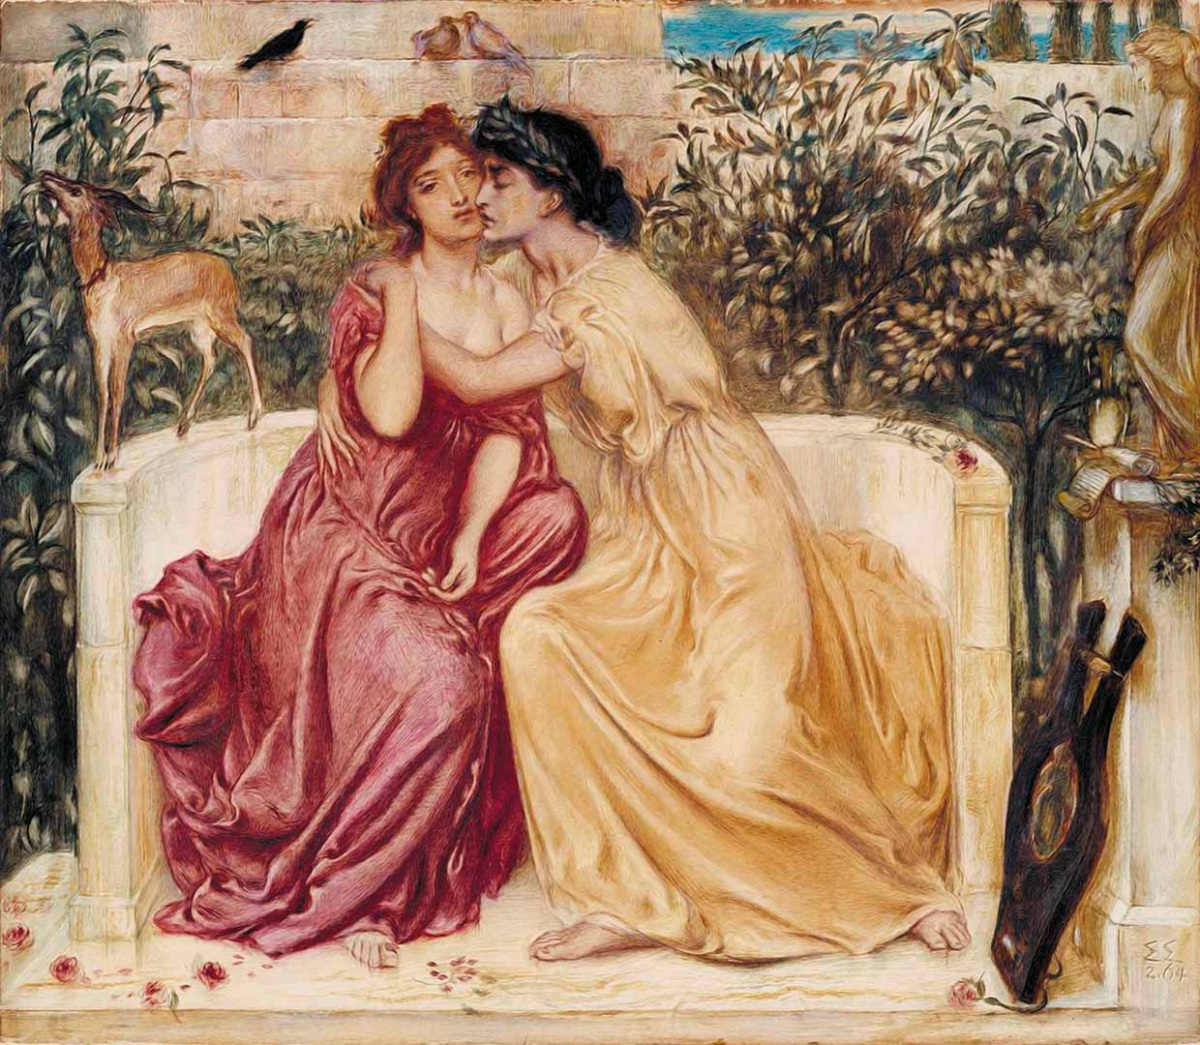 Erósz játszmái – házasélet és szexualitás az ókori Görögországban